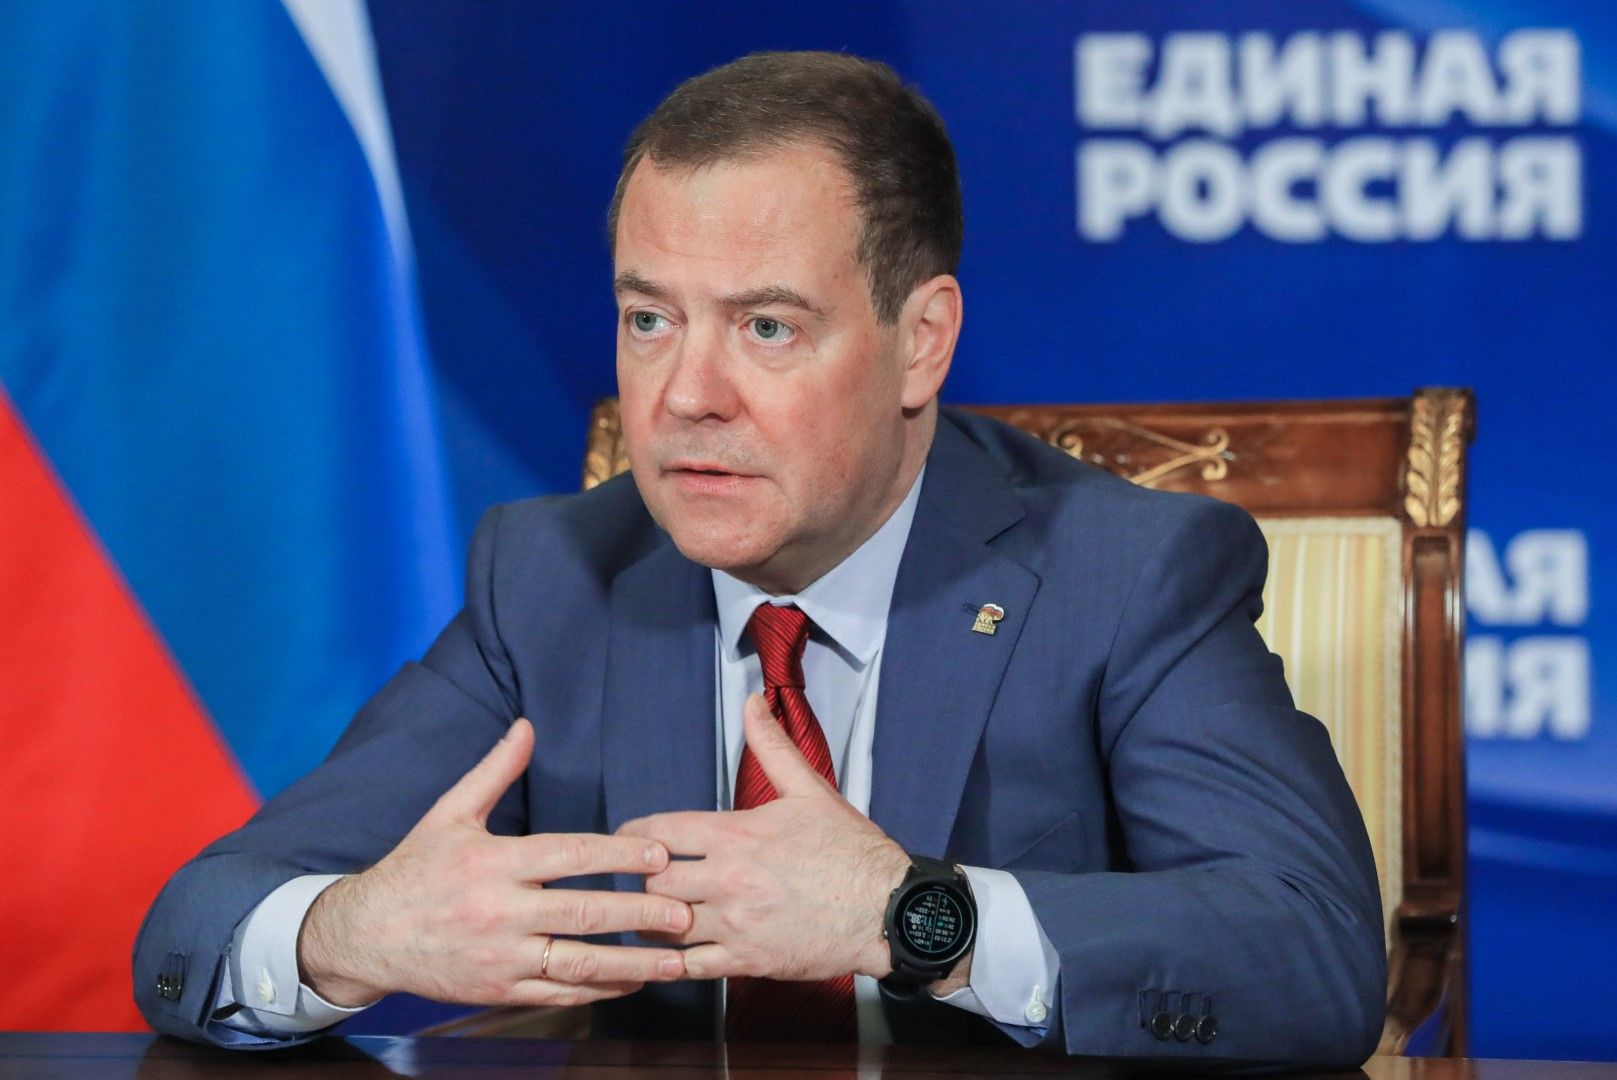 Ще доставяме храни и селскостопански продукти само на нашите приятели, заяви Медведев